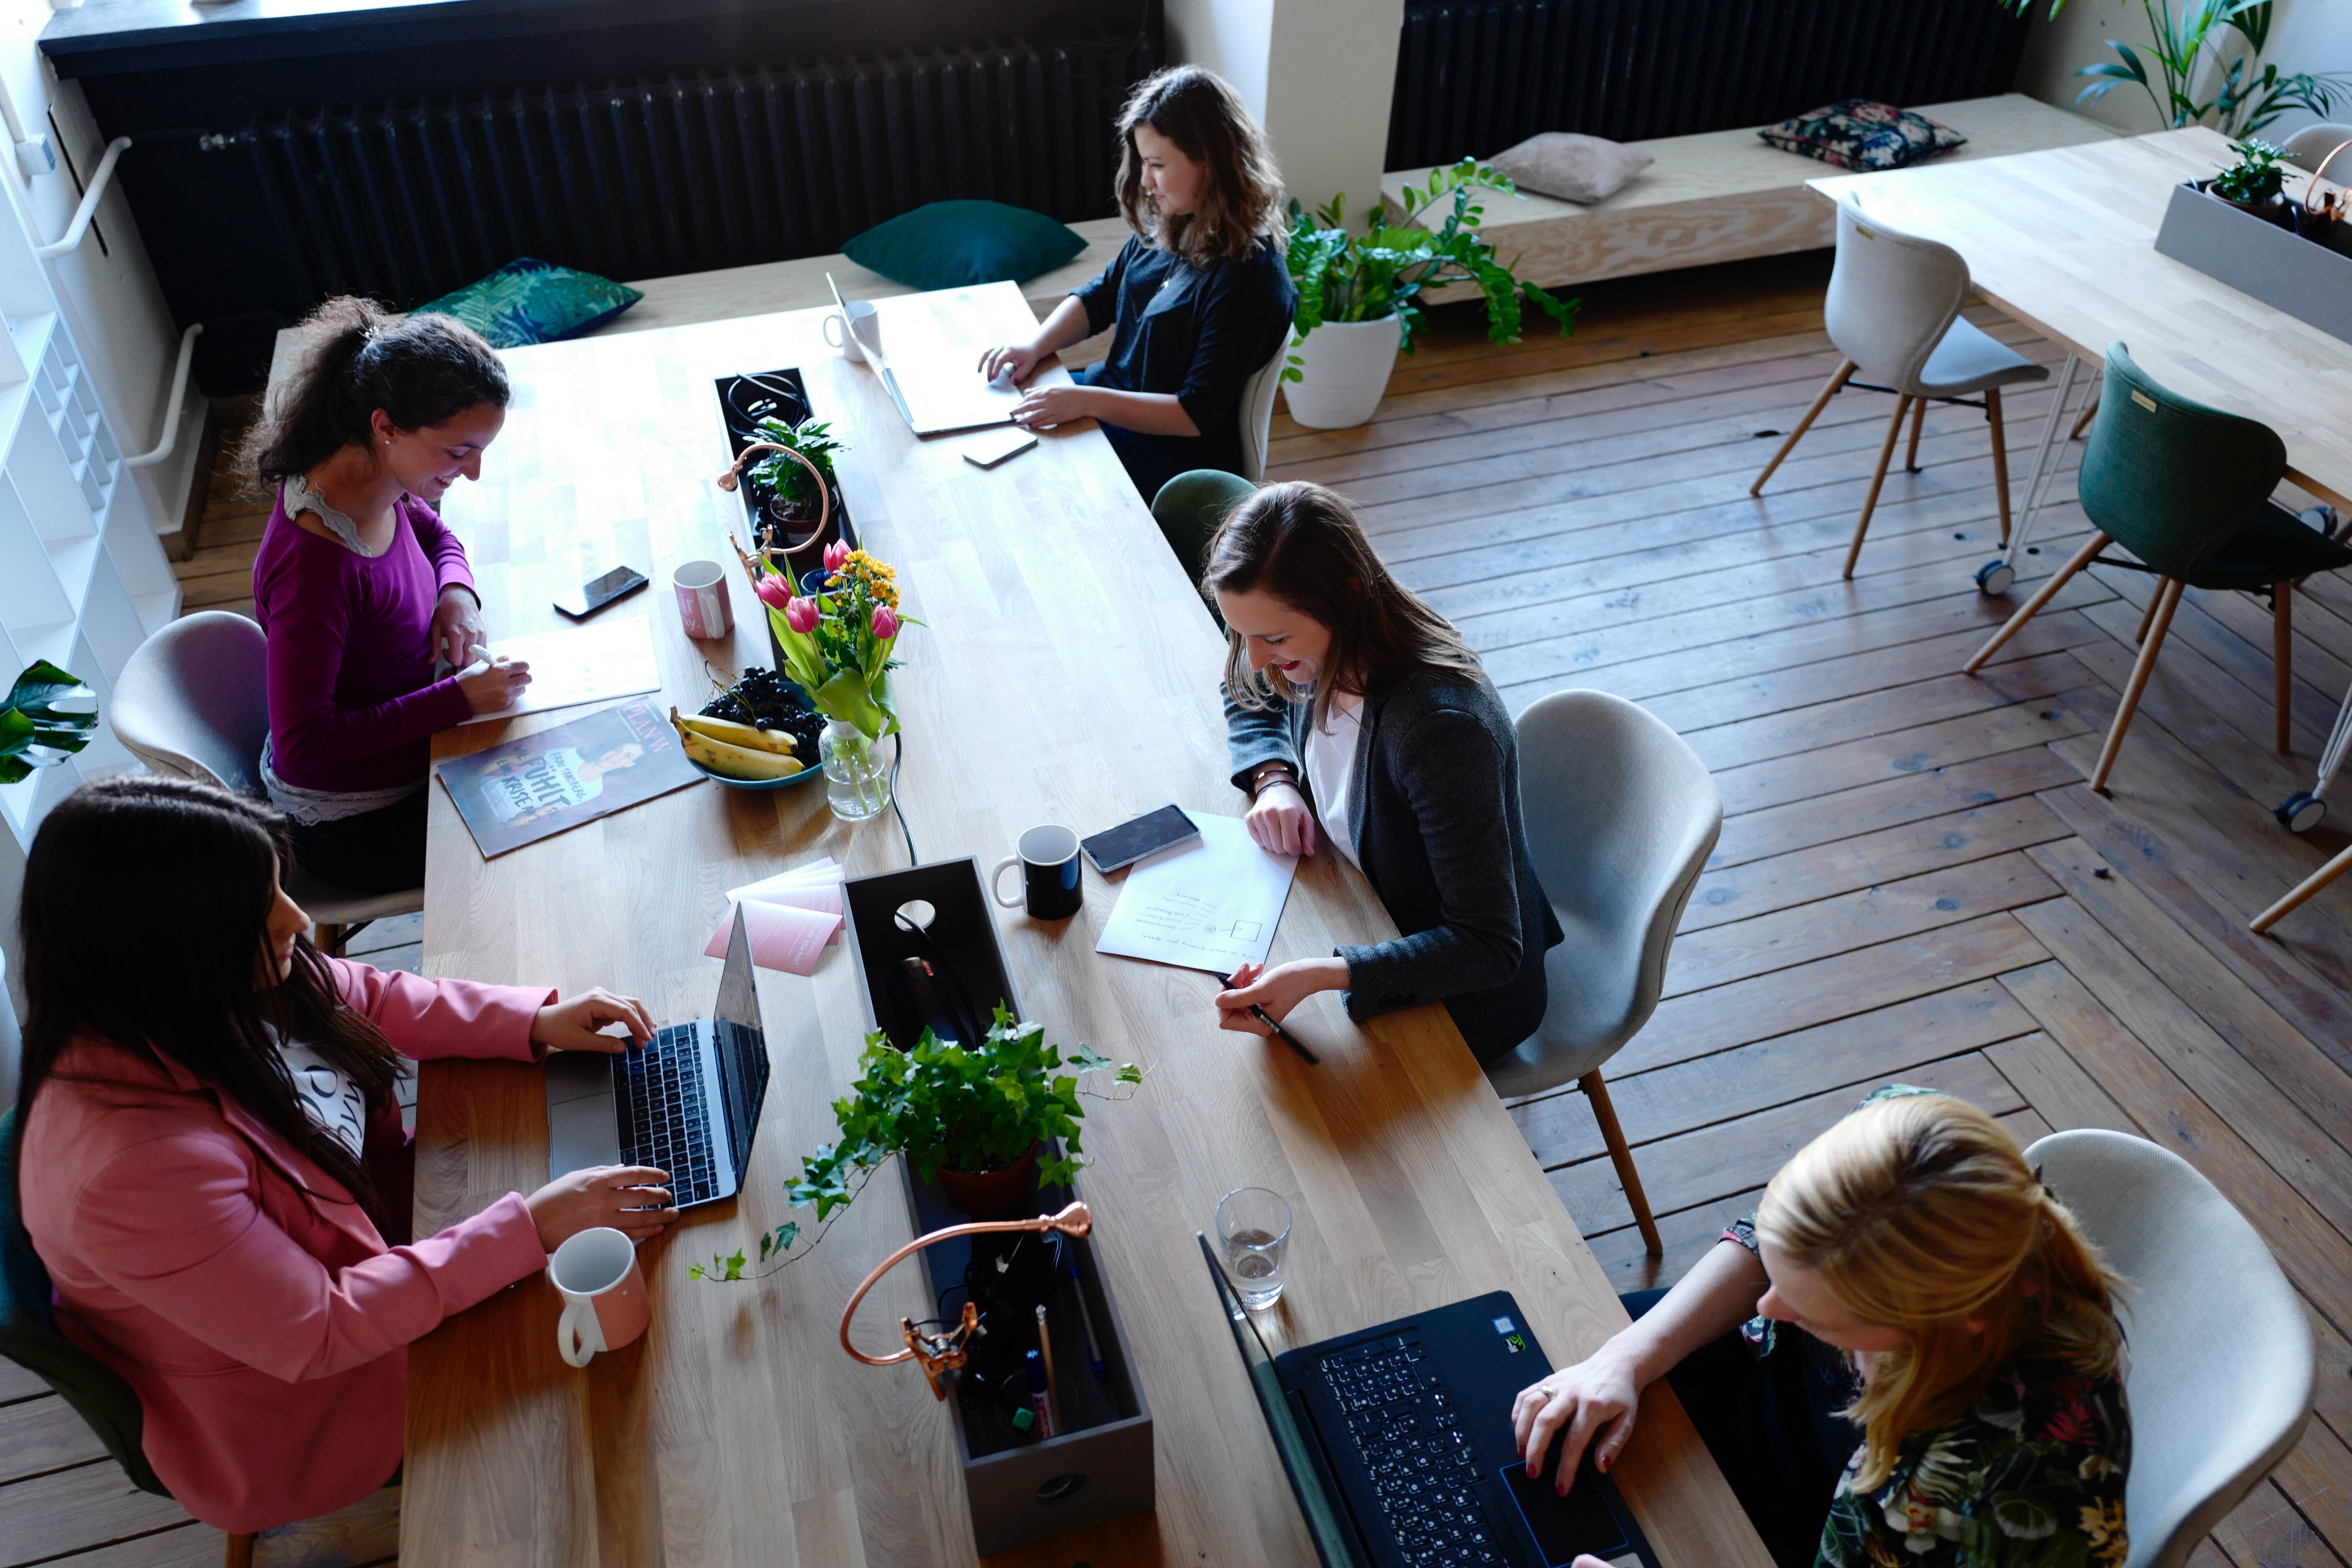 View of women working on laptops in an open-plan office